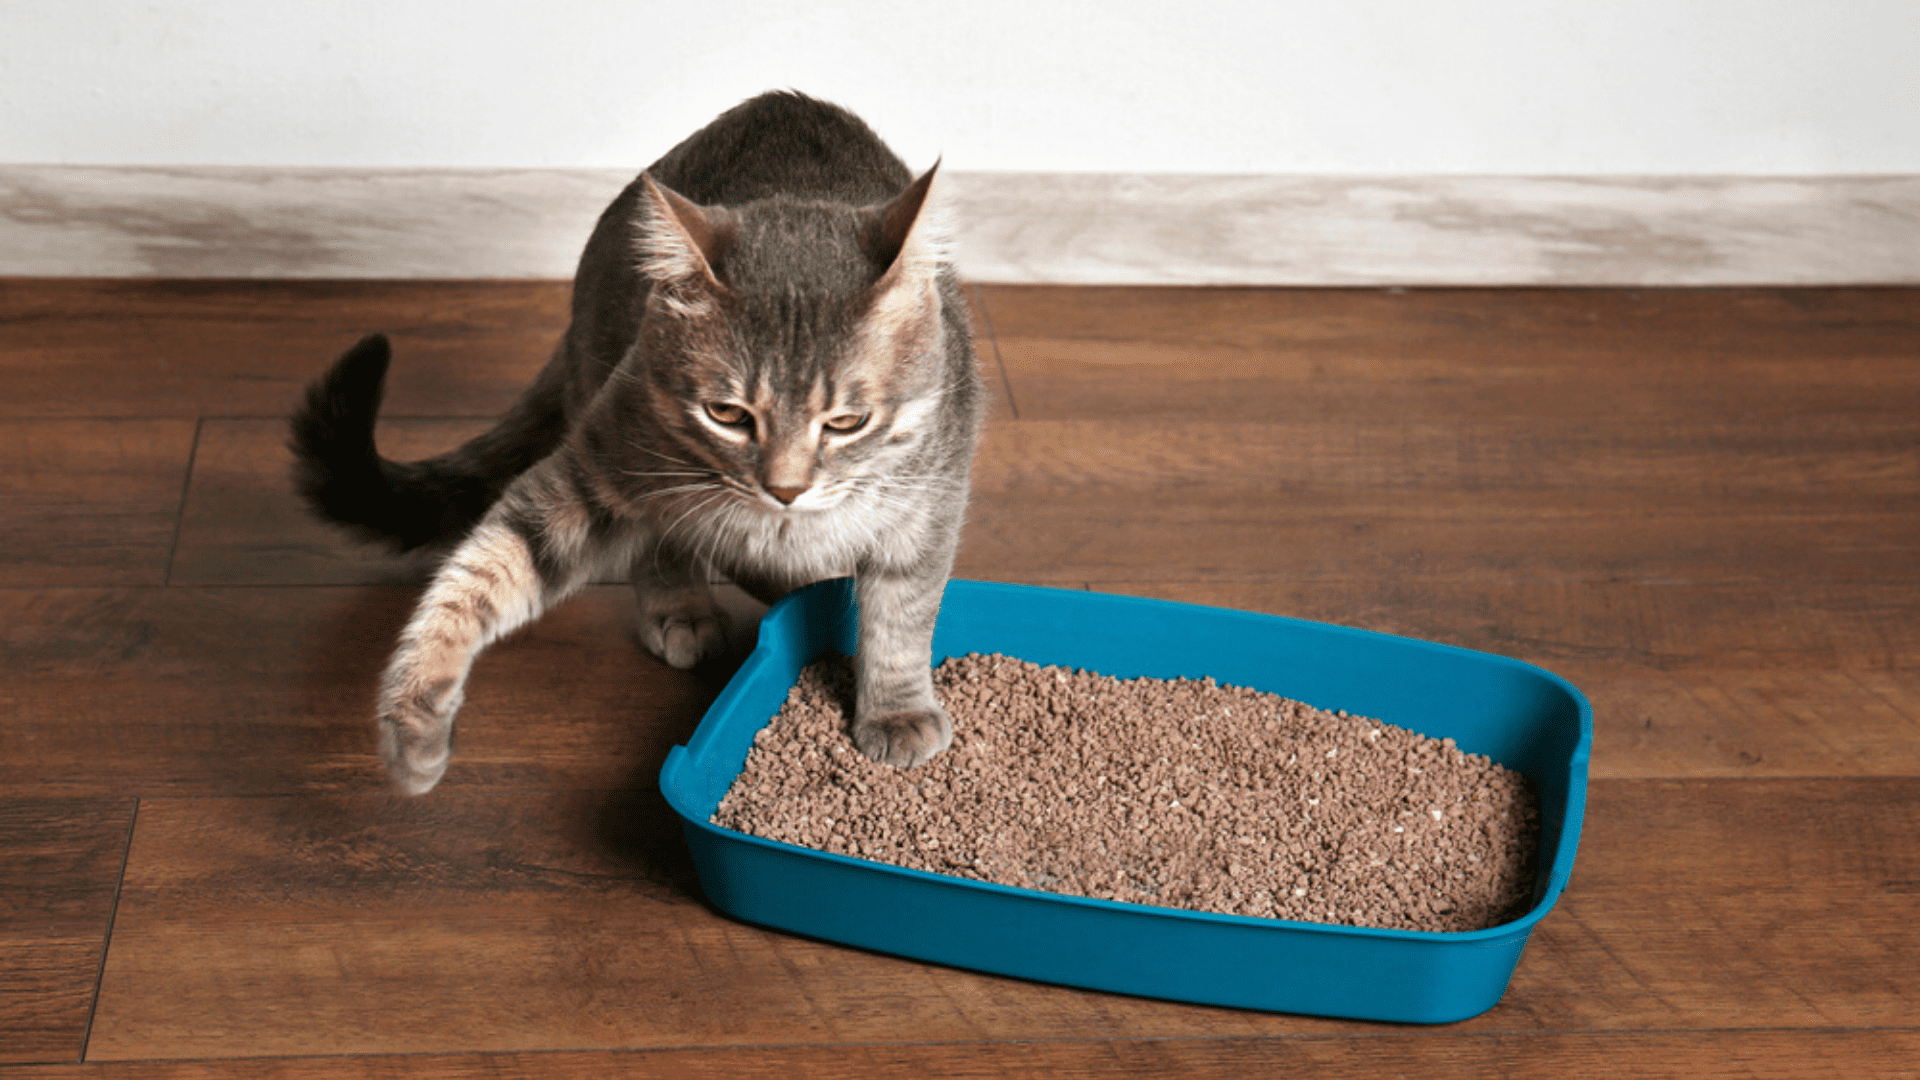 Areia para gato: qual é a melhor opção?, pet games caixa de areia 